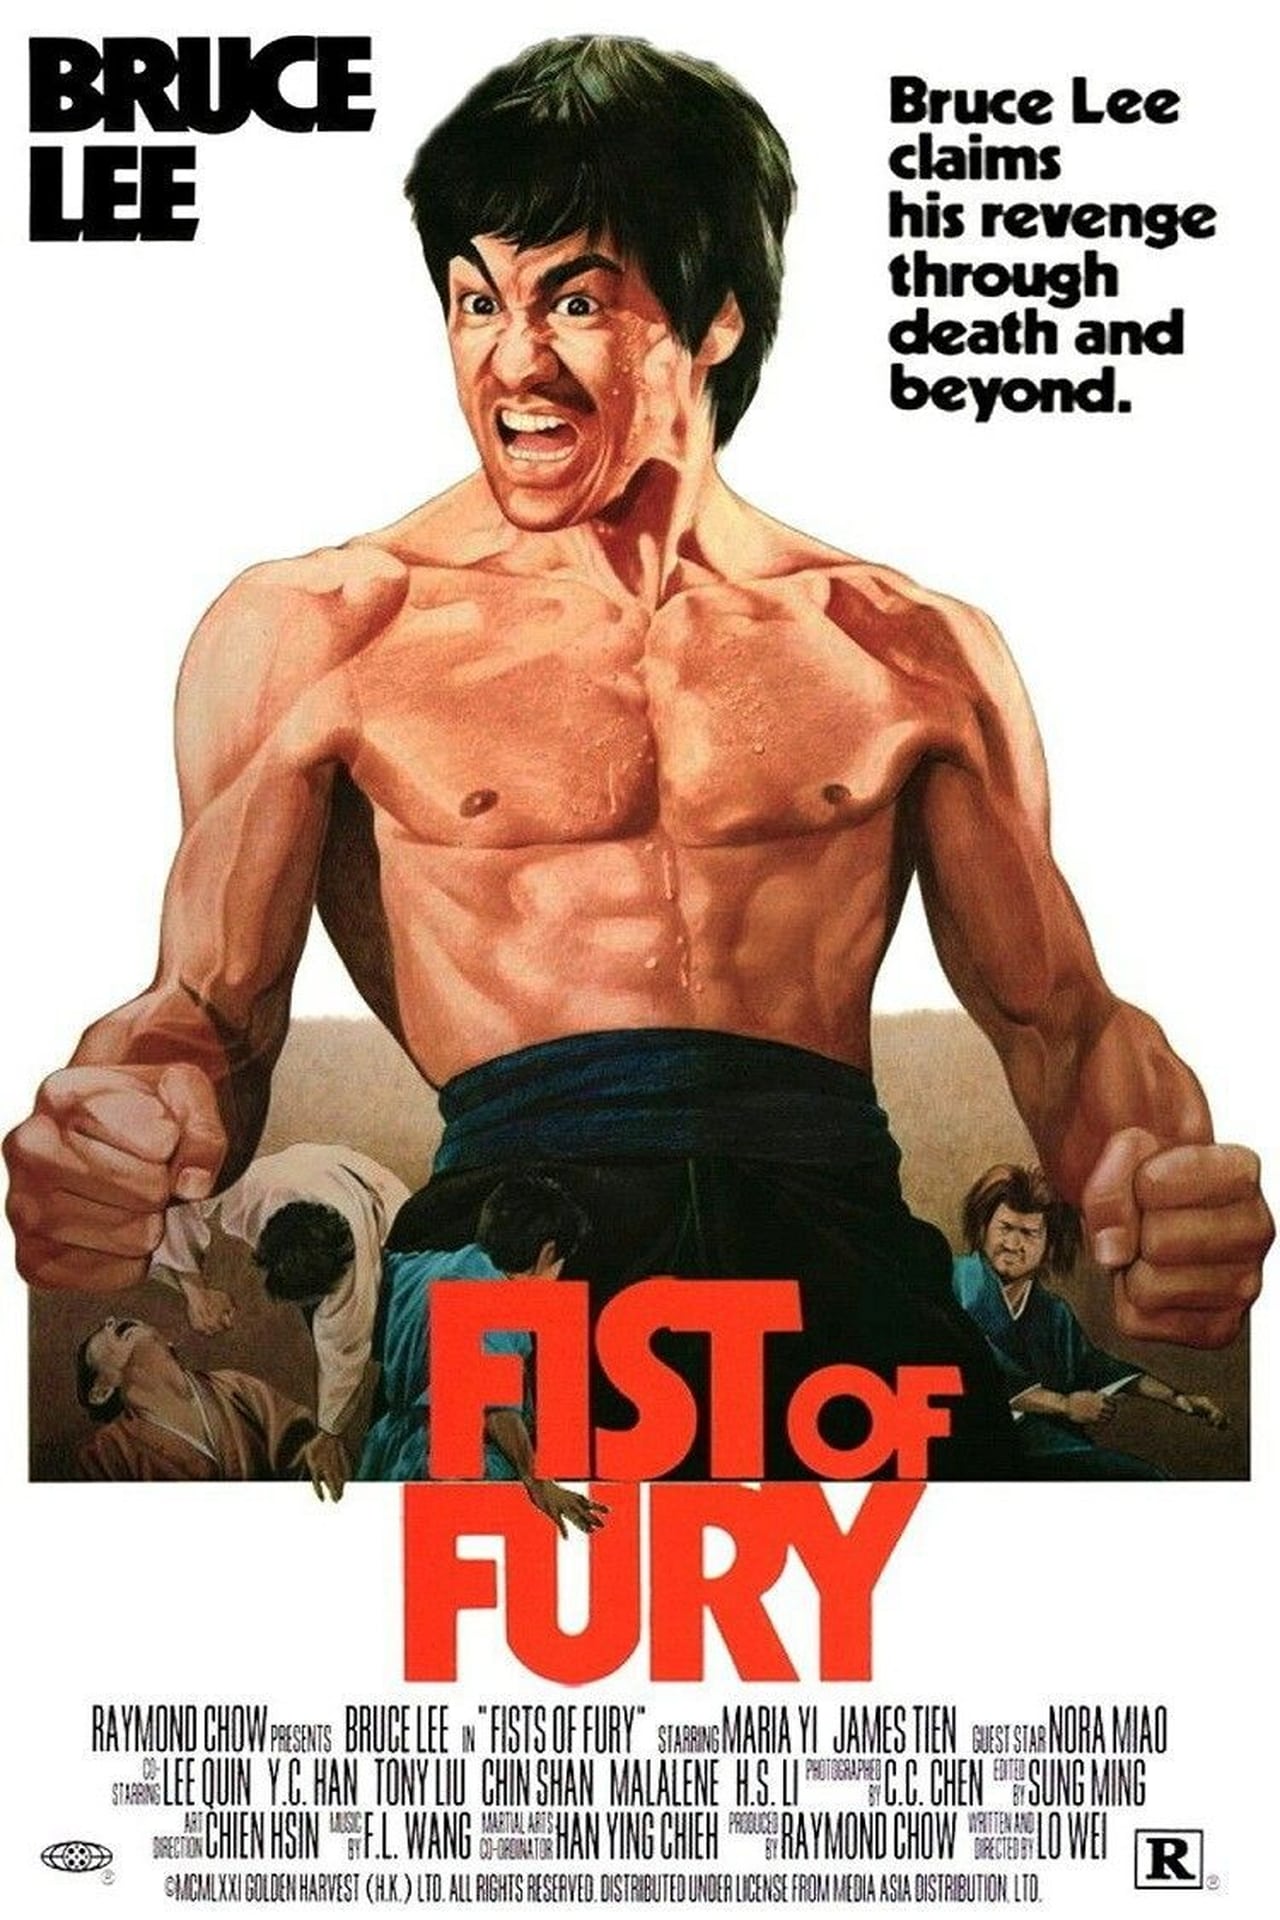 EN - FIST Of Fury (1972) BRUCE LEE